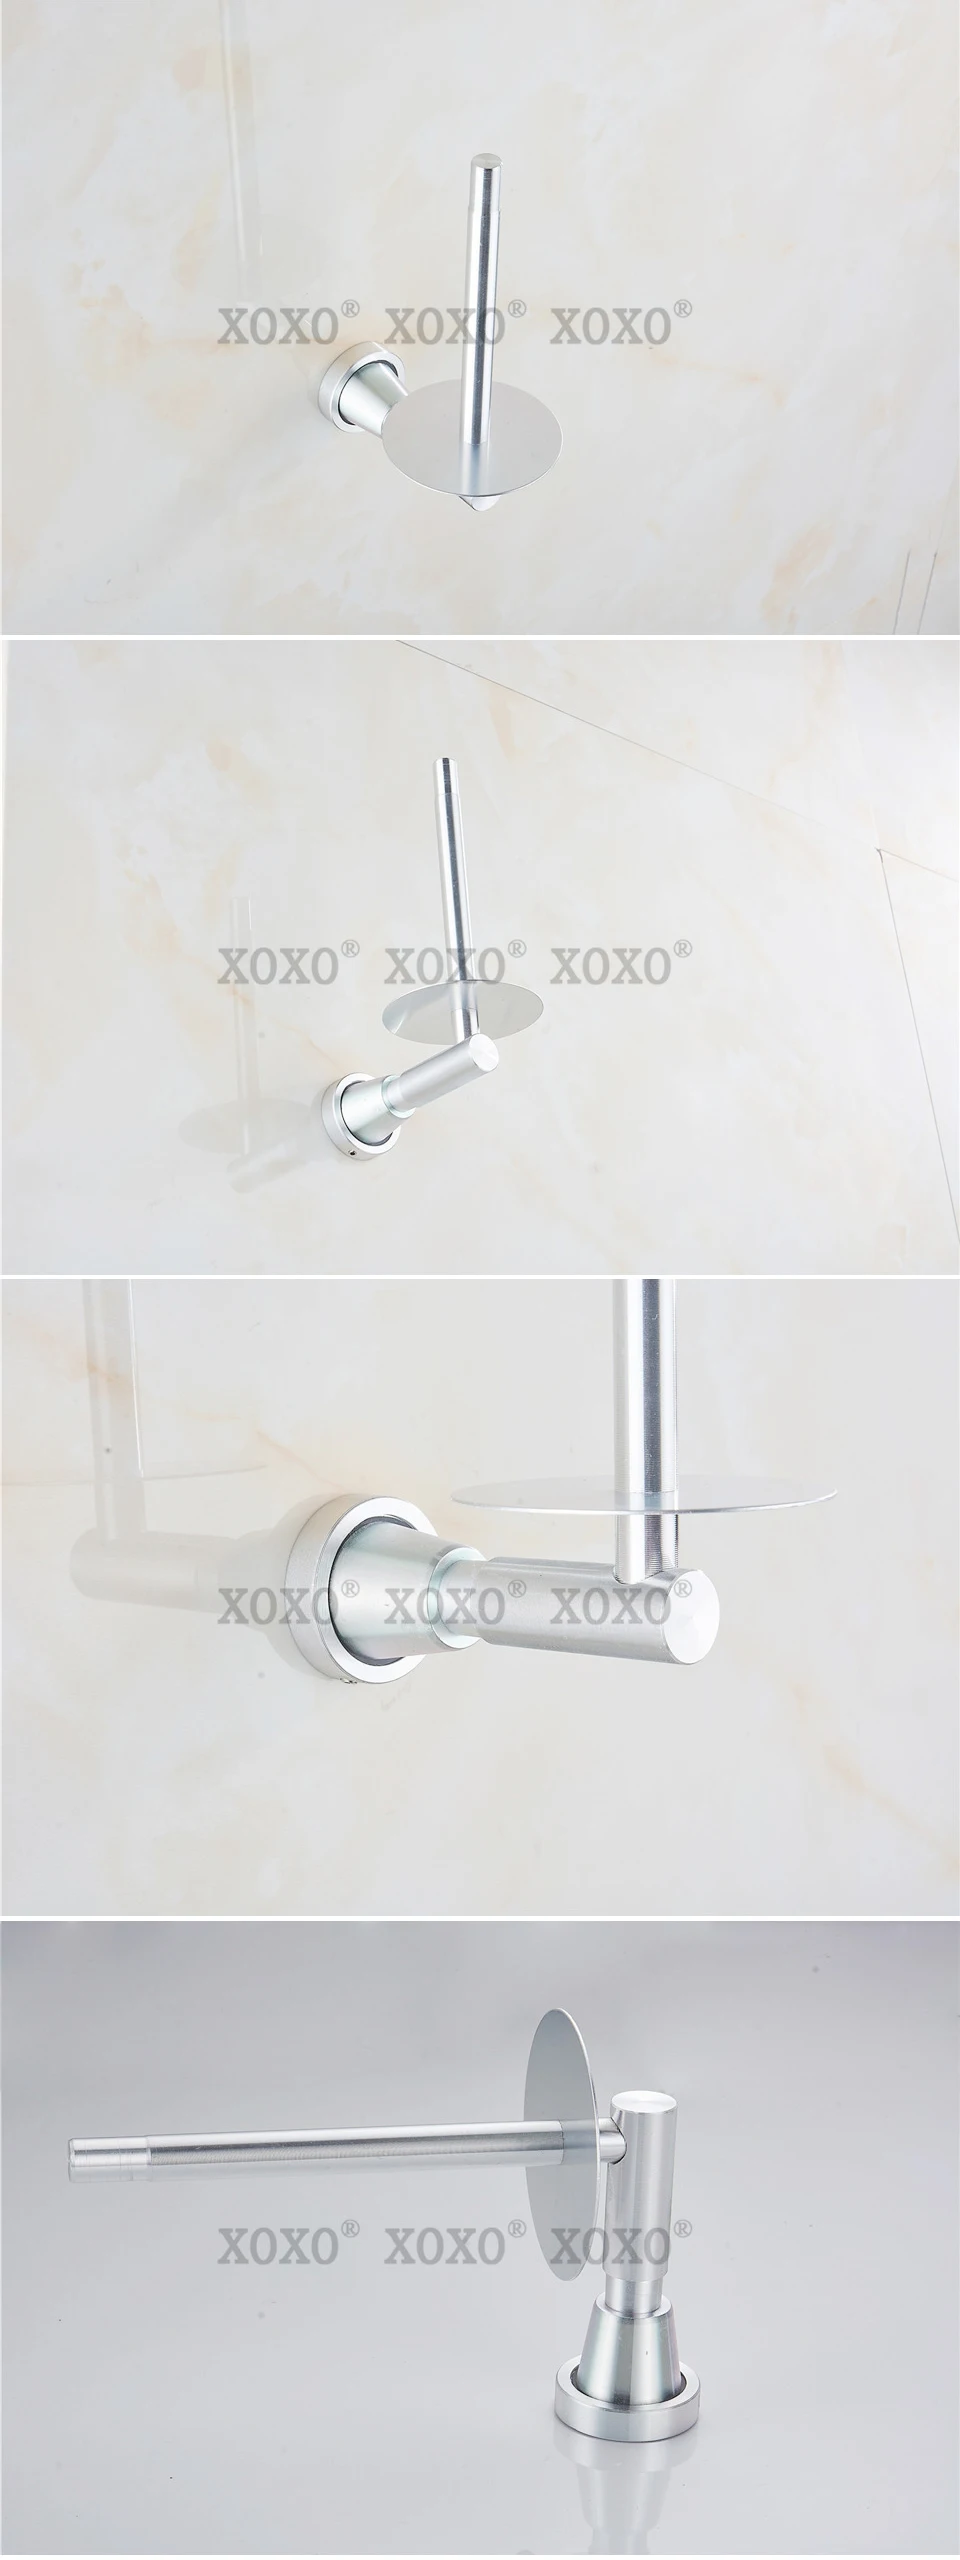 XOXONew Finether продукт soild практичный Настенный алюминиевый Аксессуары для ванной комнаты держатель бумаги/держатель рулона 3089